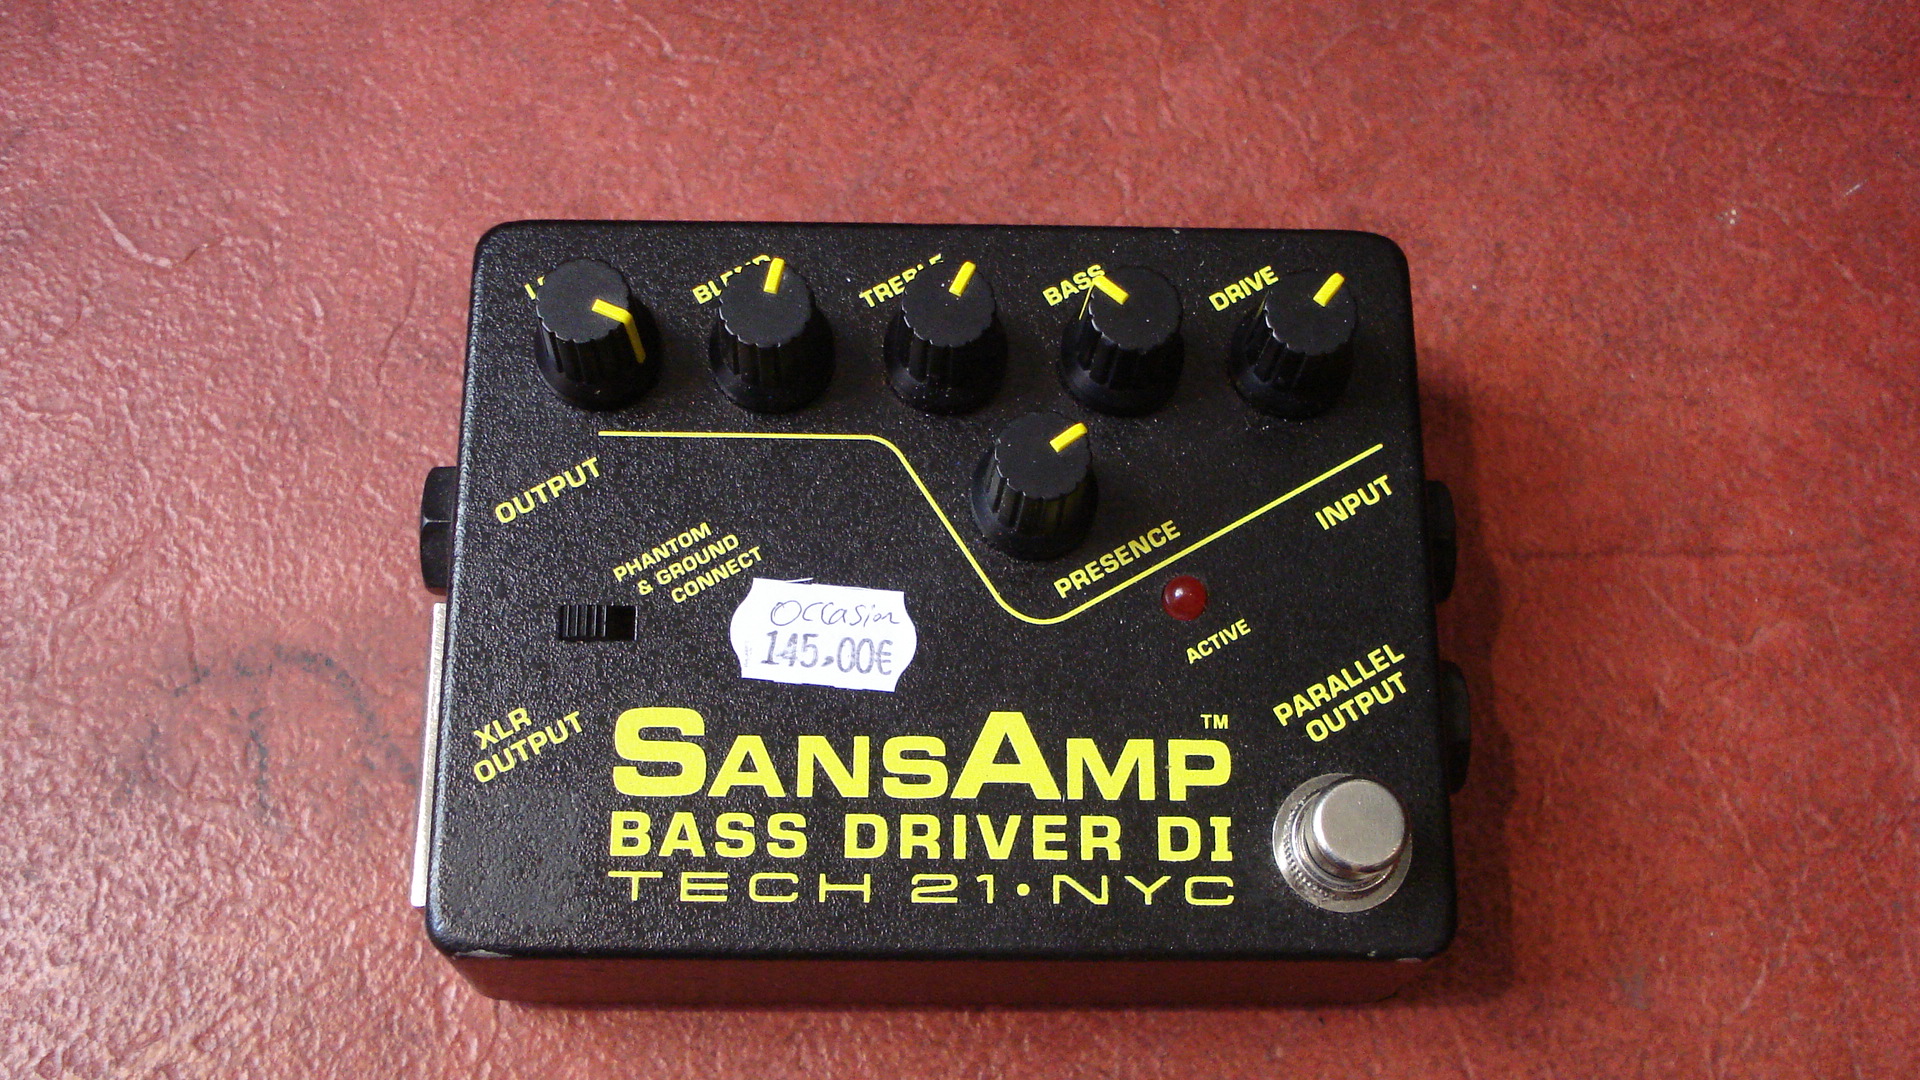 SANSAMP BASS DRIVER DI - Tech 21 SansAmp Bass Driver DI - Audiofanzine